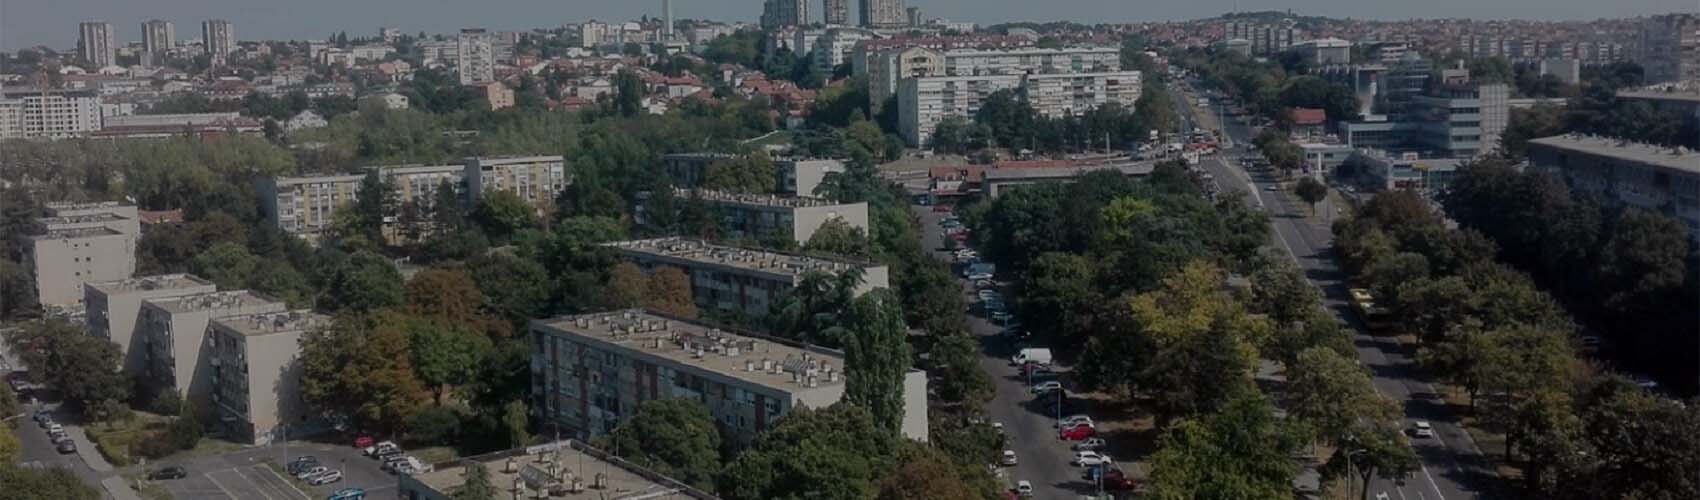 Registracija vozila Šumice | Beograd